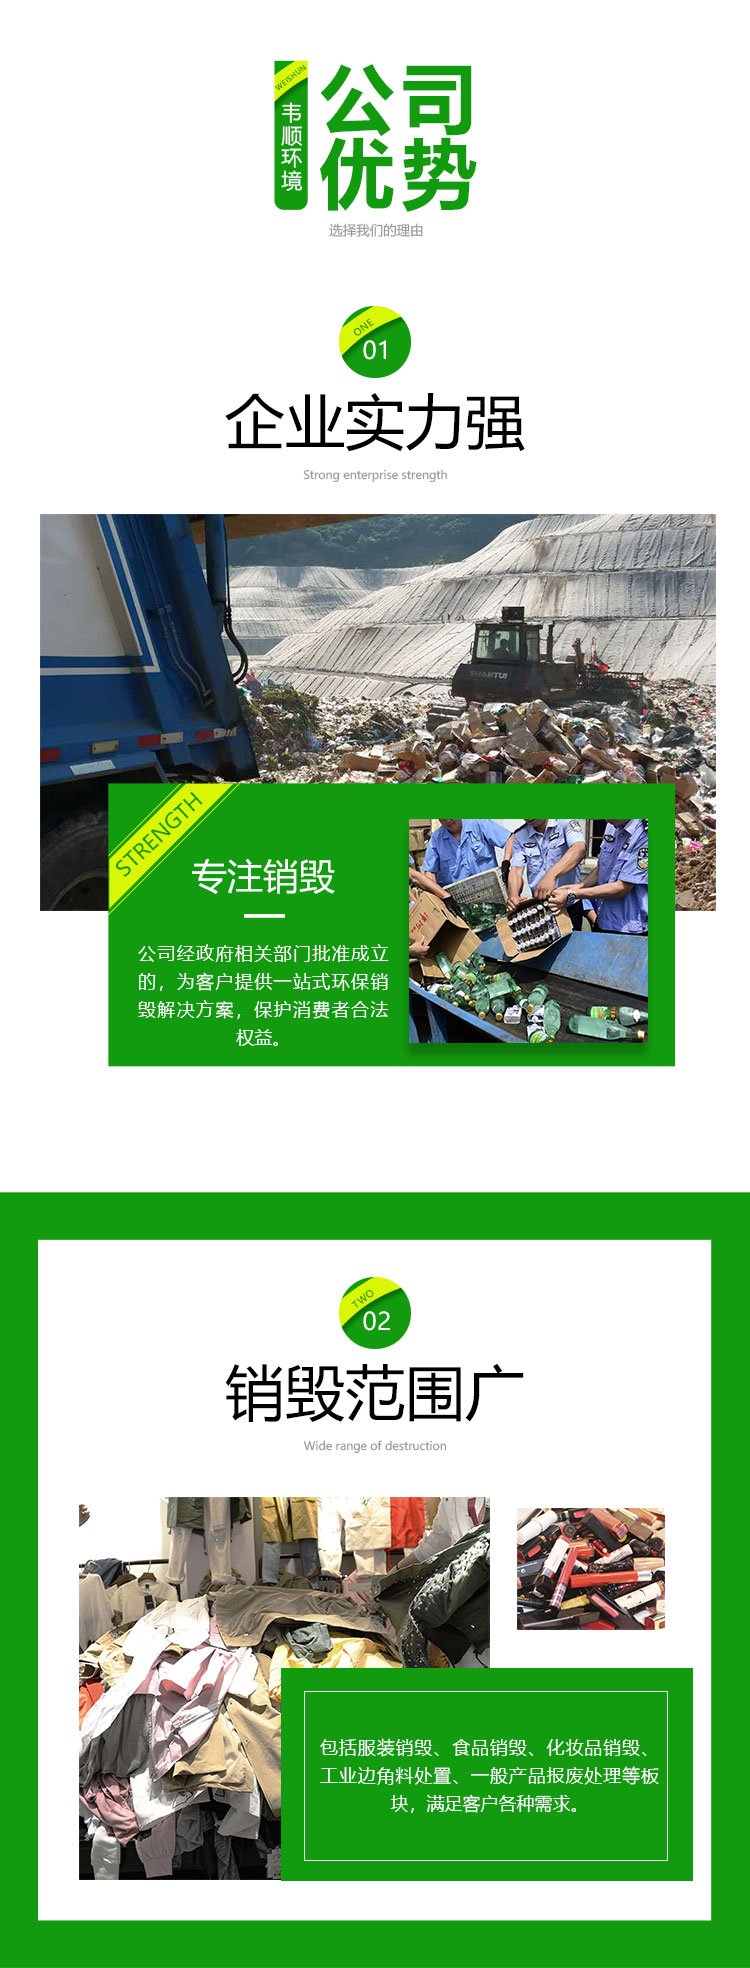 深圳宝安区报废商品销毁公司焚烧销毁机构